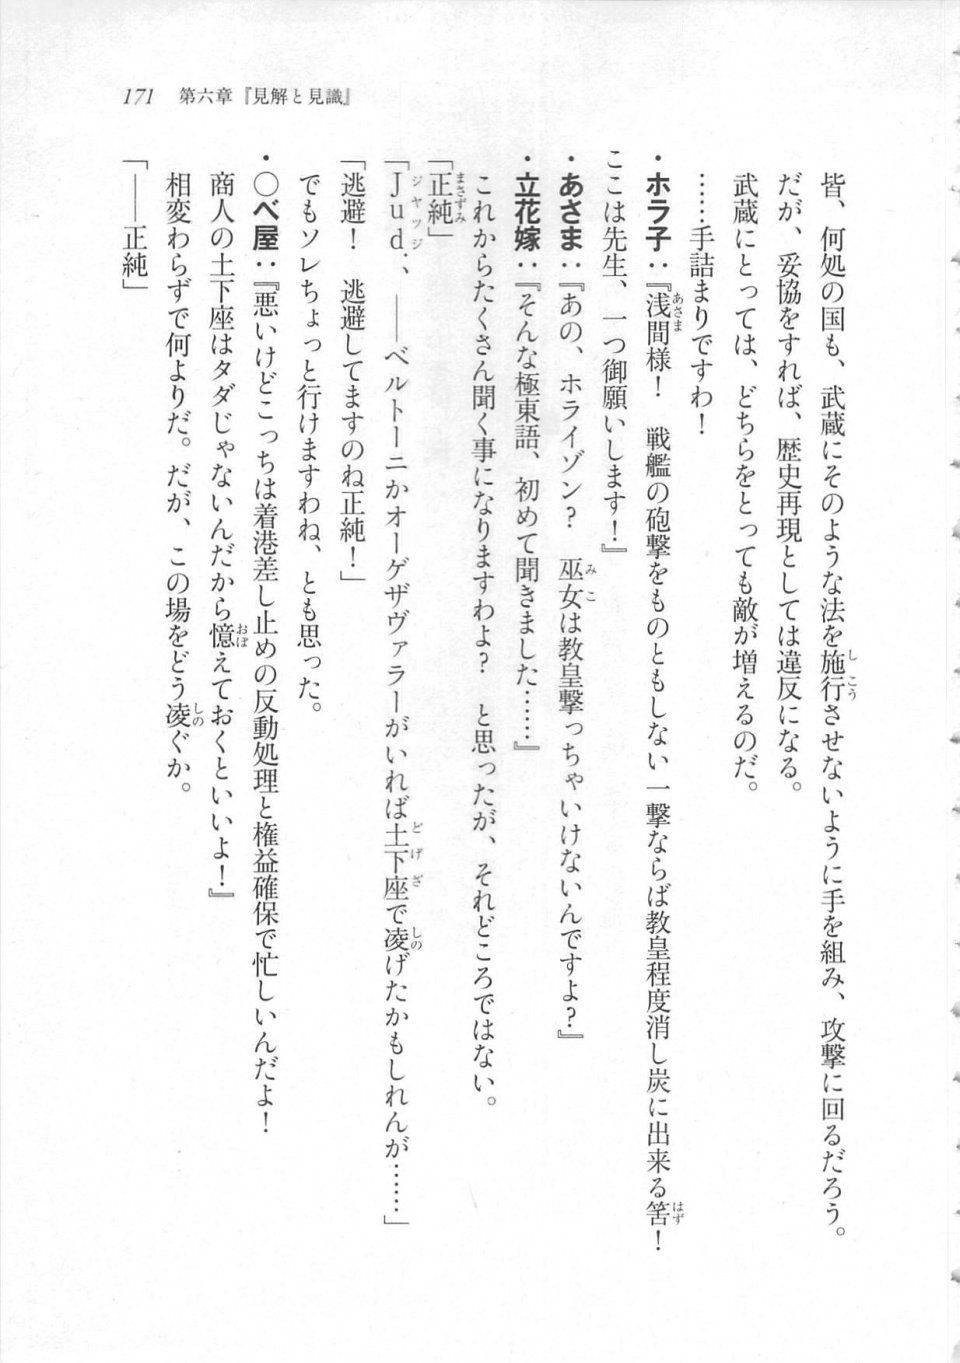 Kyoukai Senjou no Horizon LN Sidestory Vol 3 - Photo #175